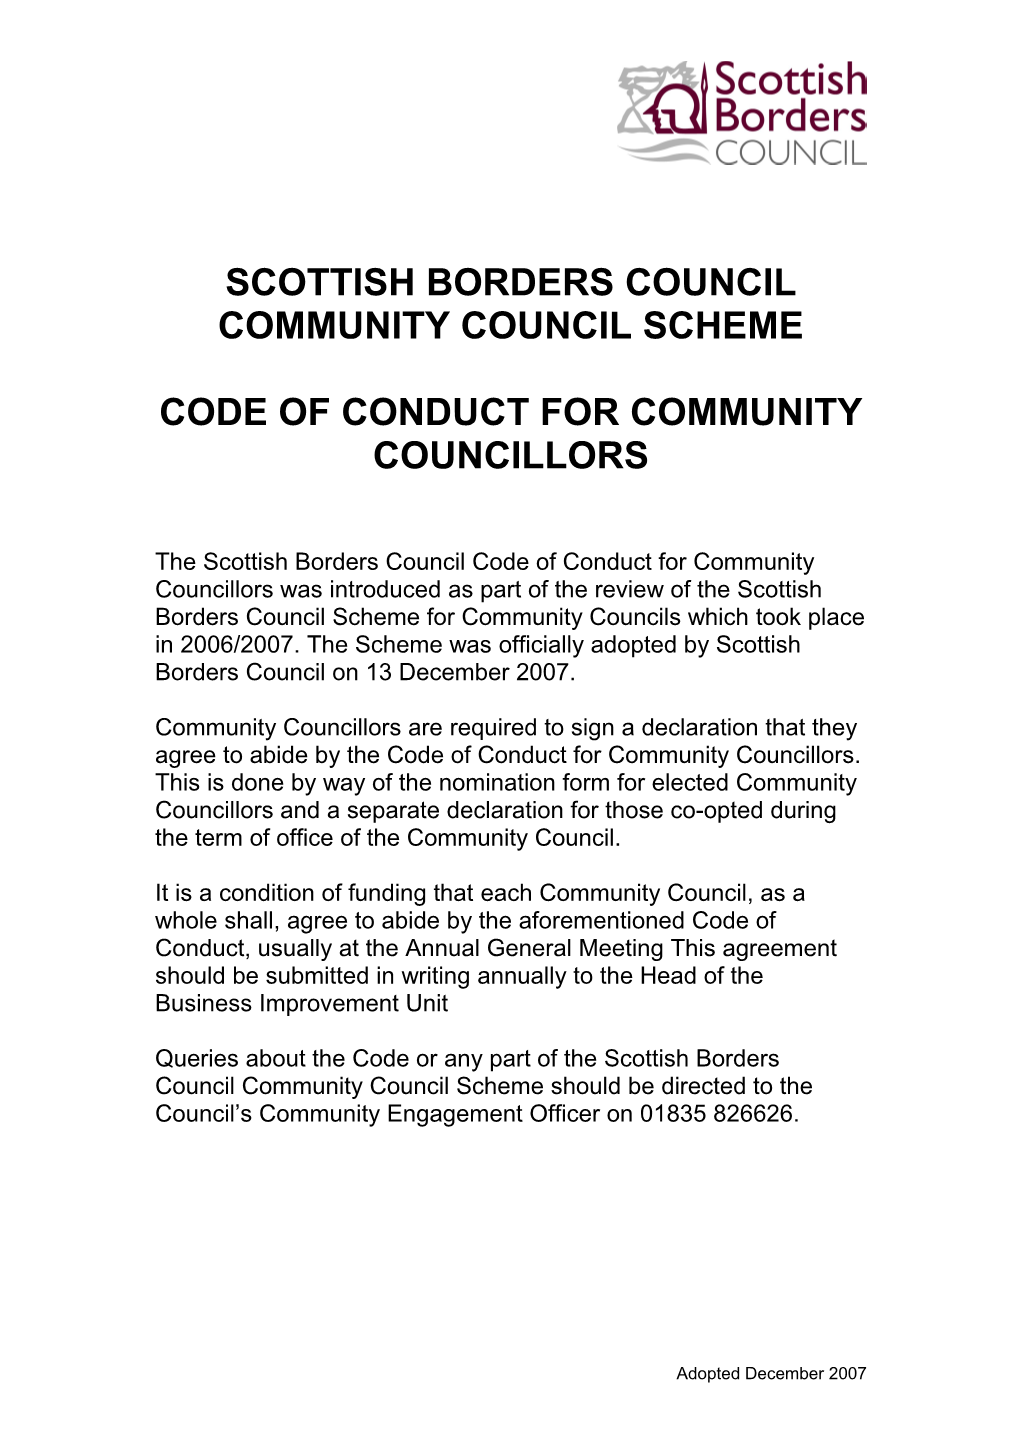 Scottish Borders Council Community Council Scheme